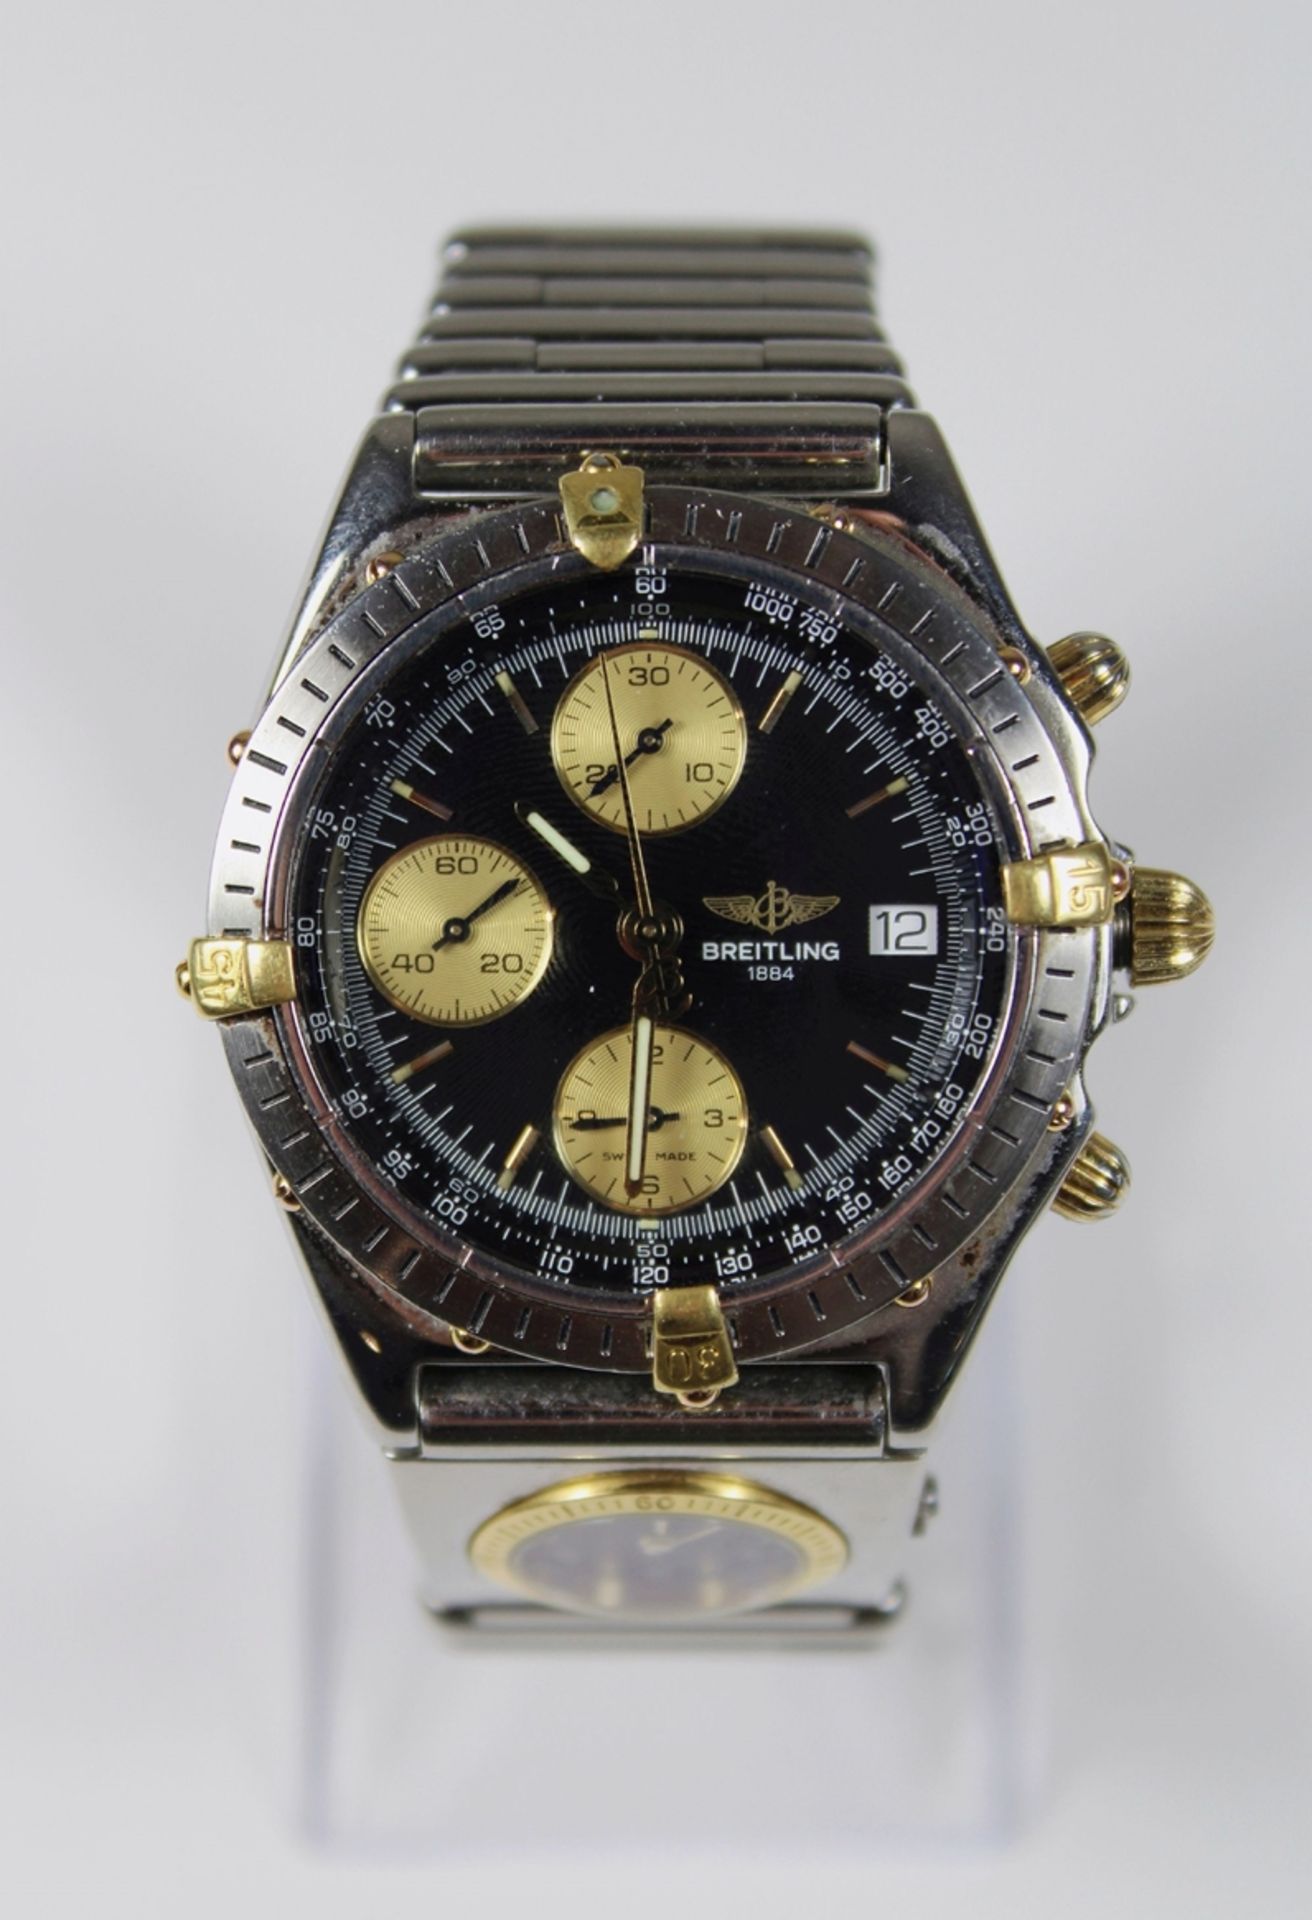 Herrenuhr Breitling Chronomat UTC Modul an Roleuaxband, Ref. B13048 144978, Herstellungsjahr: 1990- - Bild 2 aus 4